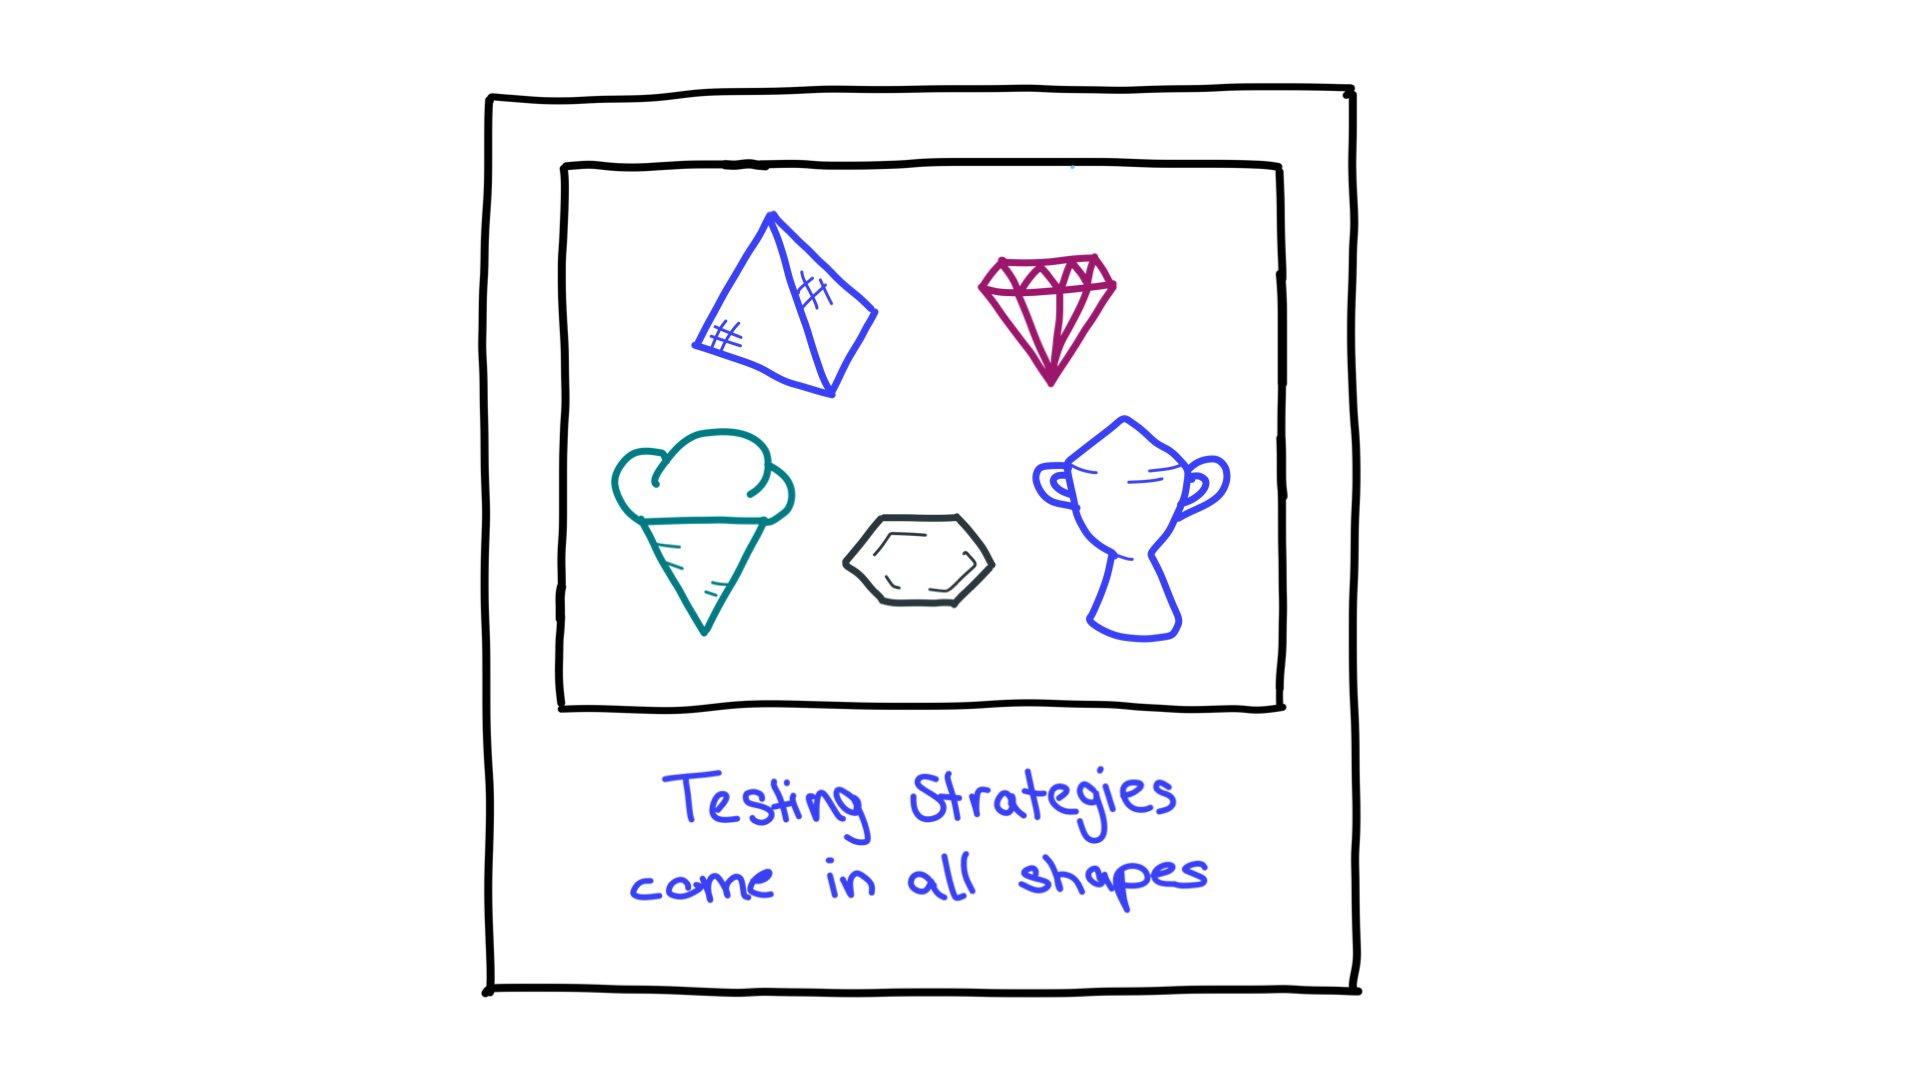 Alguns exemplos de formas de estratégia de teste: uma pirâmide, um diamante cortado, uma casquinha de sorvete, um hexágono e um troféu.